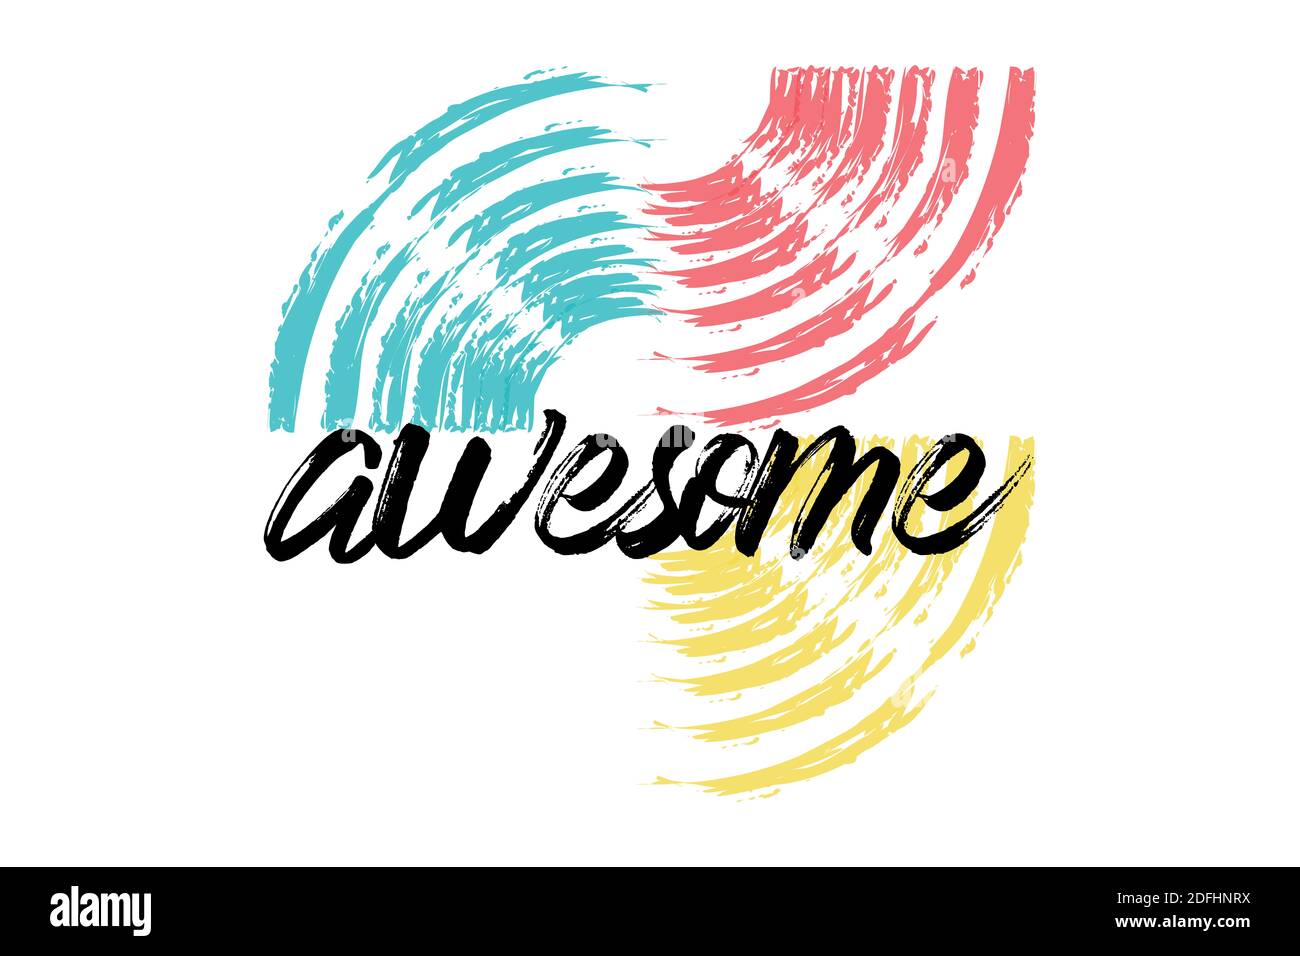 Motif graphique ludique, audacieux et vibrant d'un mot « Awesome » avec des traits de pinceau circulaires dans les couleurs rouge, jaune, bleu et noir. Typographie manuscrite Banque D'Images